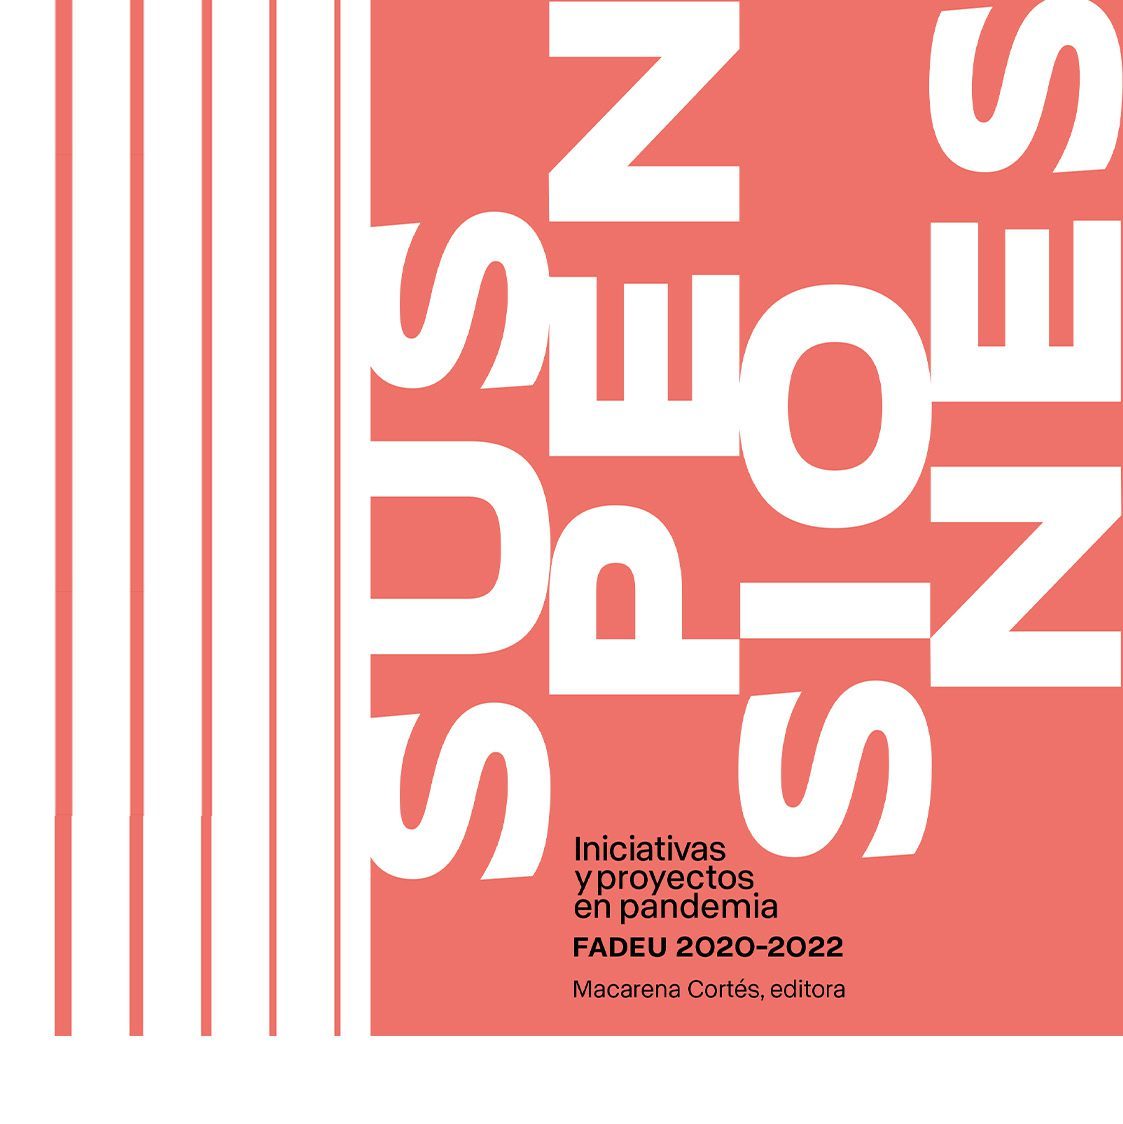 FADEU I Presentación libro “Suspensiones. Iniciativas y proyectos en pandemia FADEU 2020-2022”